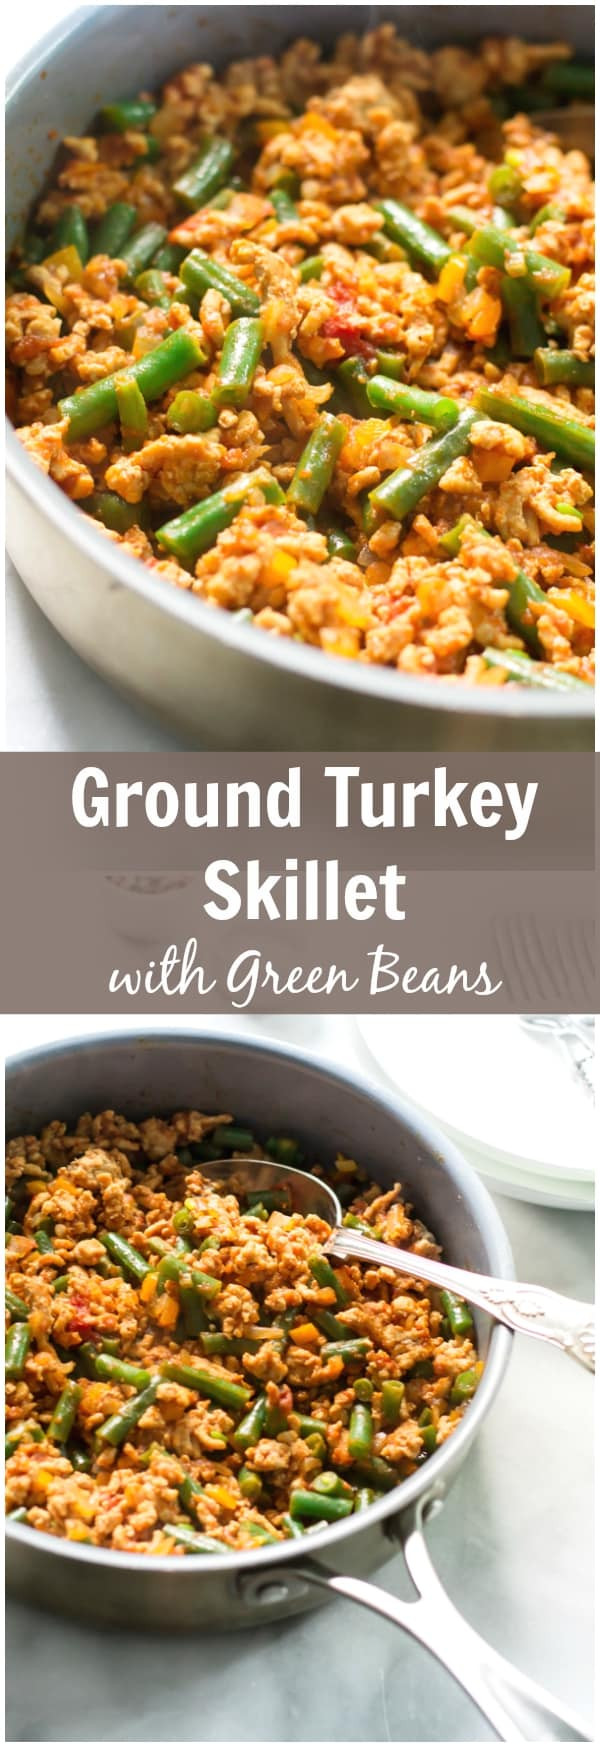 Quick Meals With Ground Turkey
 Ground Turkey Skillet with Green Beans Primavera Kitchen